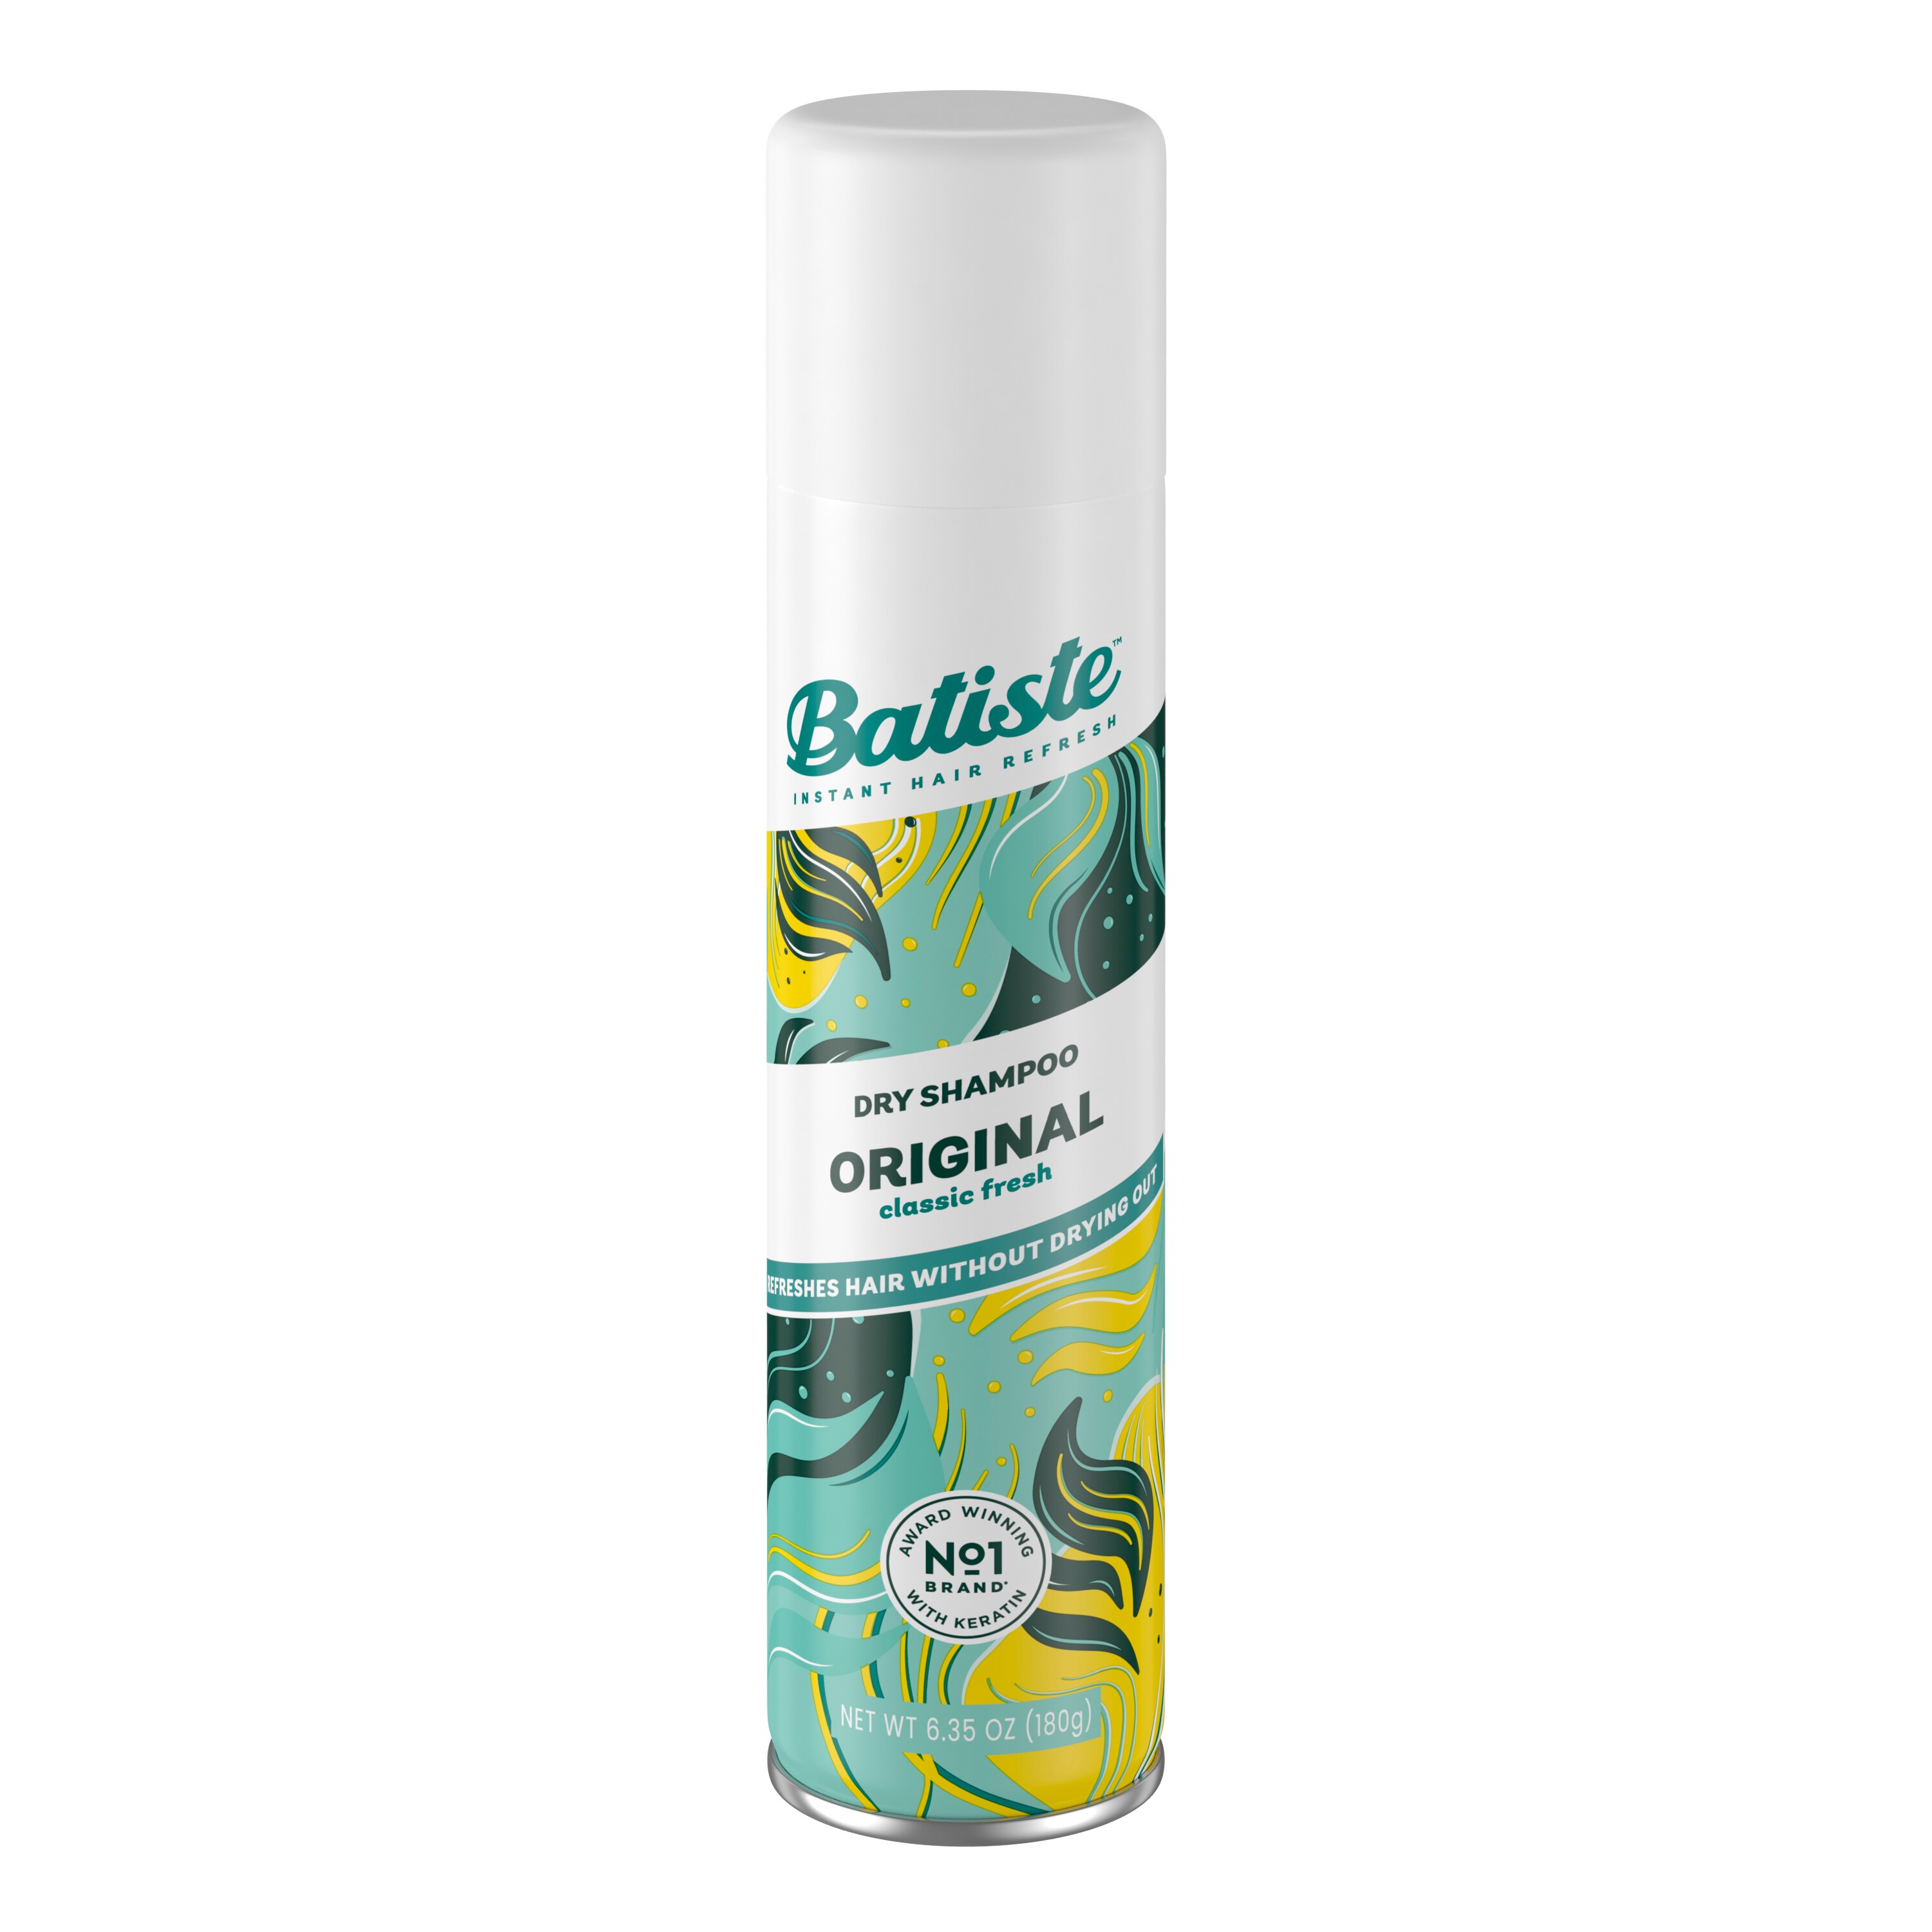 Batiste Original Dry Shampoo, 6.35 Oz - 5.71 Oz , CVS